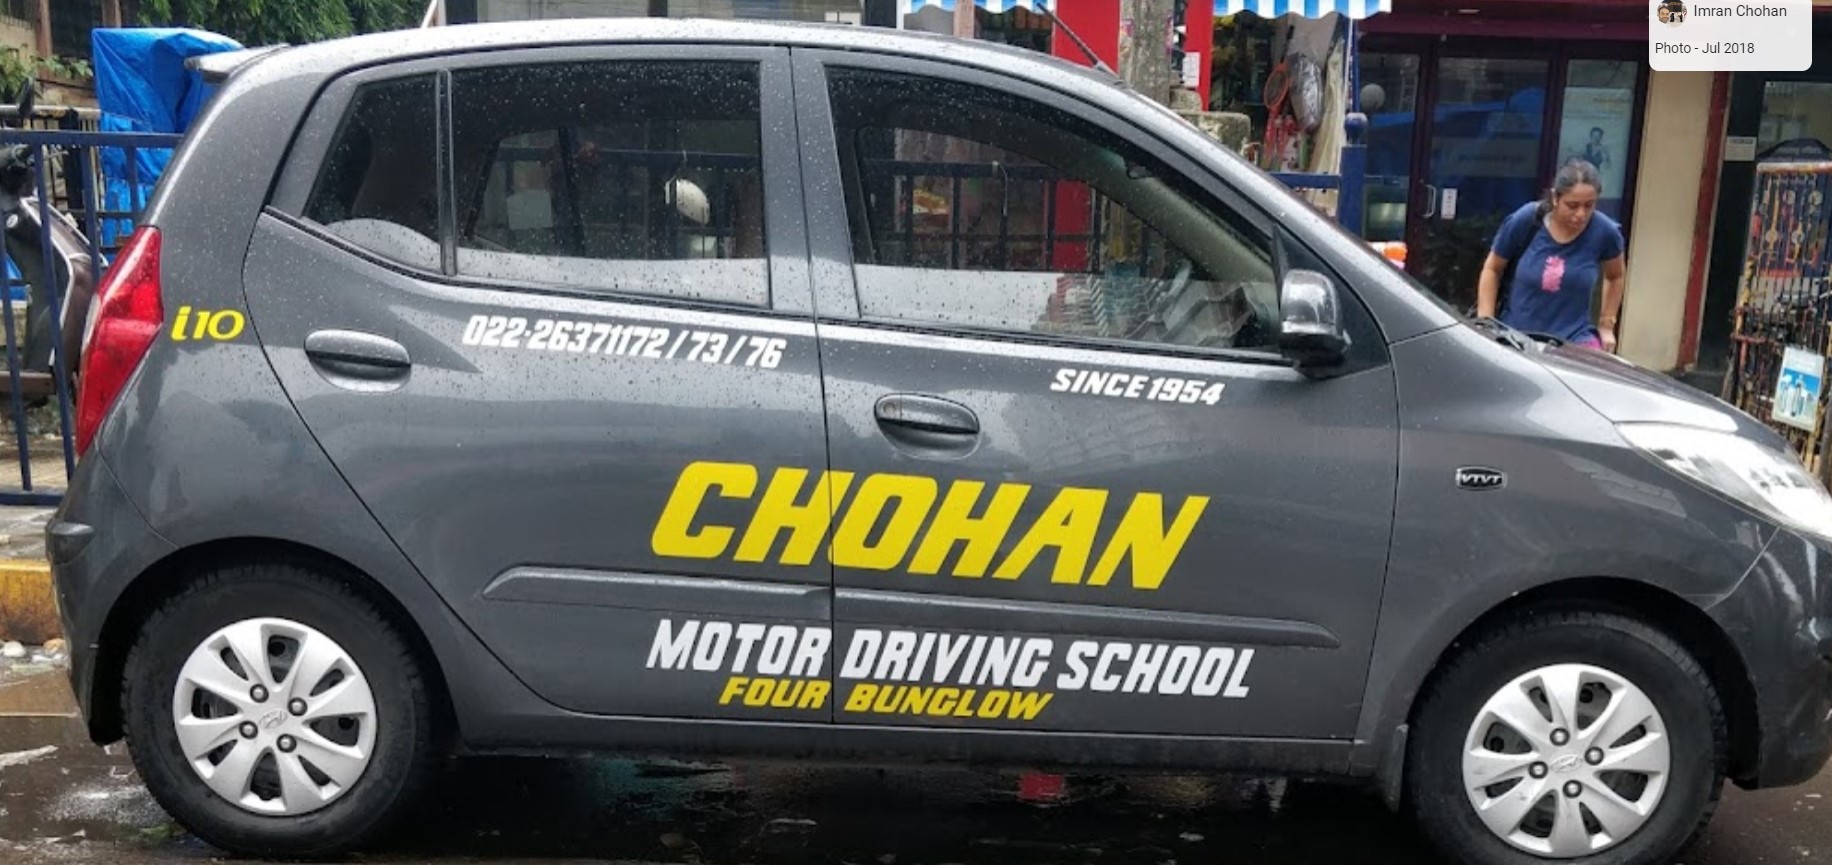 Chohan Motor Driving School - Andheri West in Andheri West